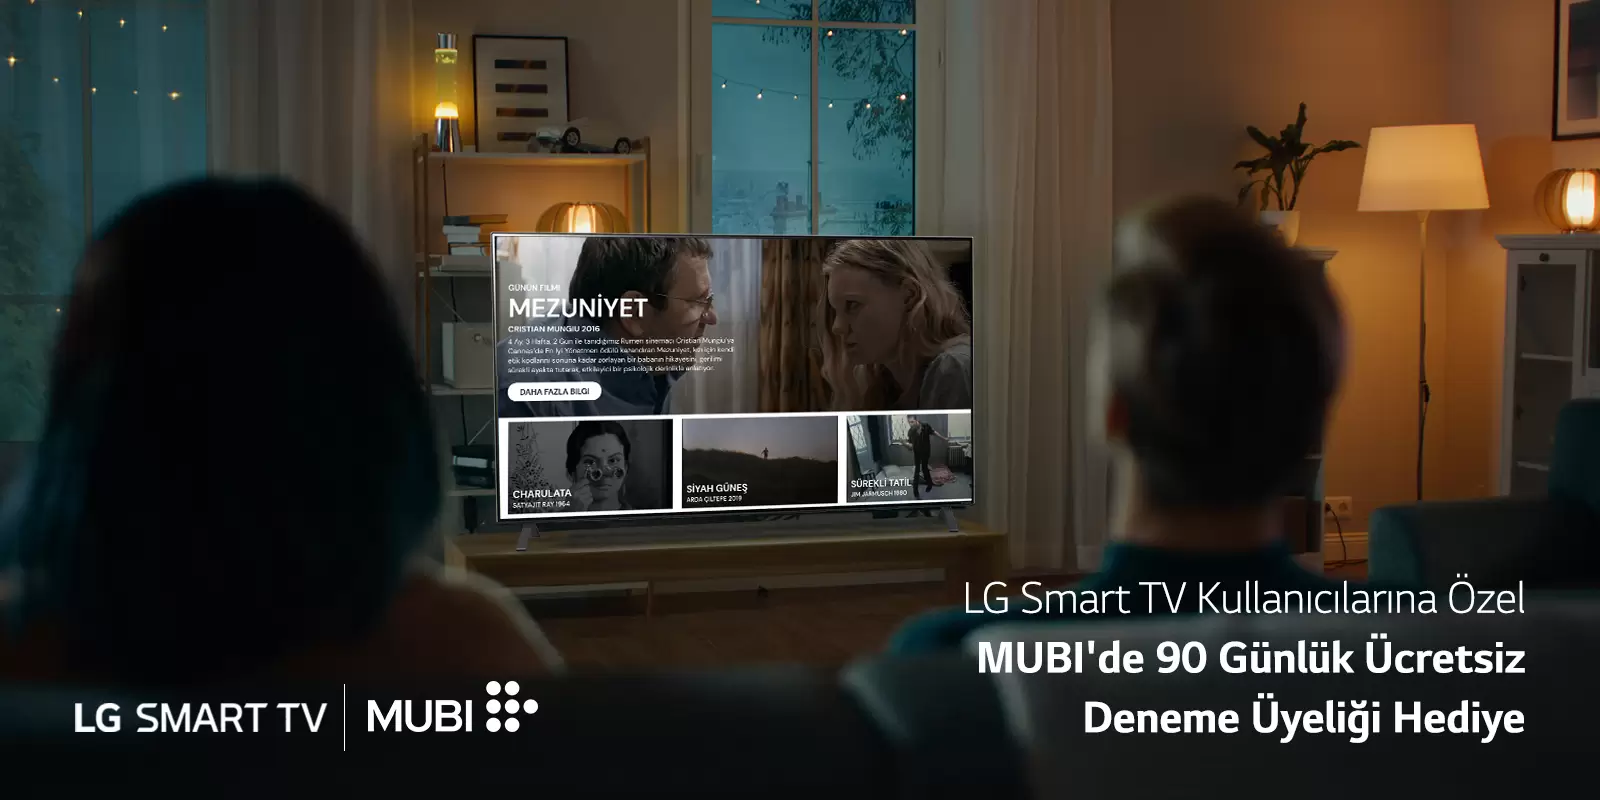 LG Smart TV kullanıcılarına özel MUBI’de 90 günlük ücretsiz deneme üyeliği